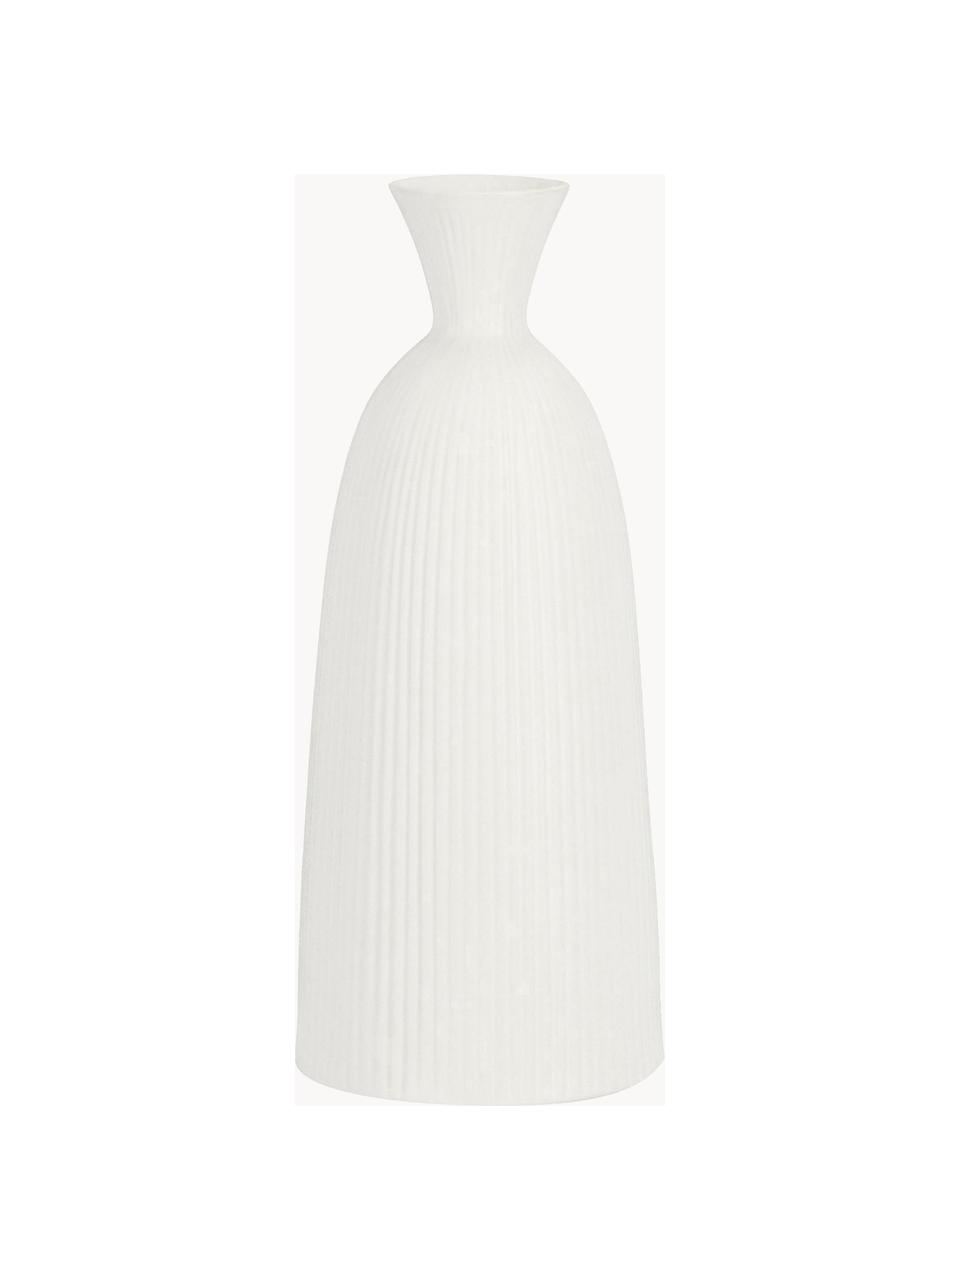 Designová keramická váza Striped, V 35 cm, Keramika, Bílá, Ø 14 cm, V 35 cm